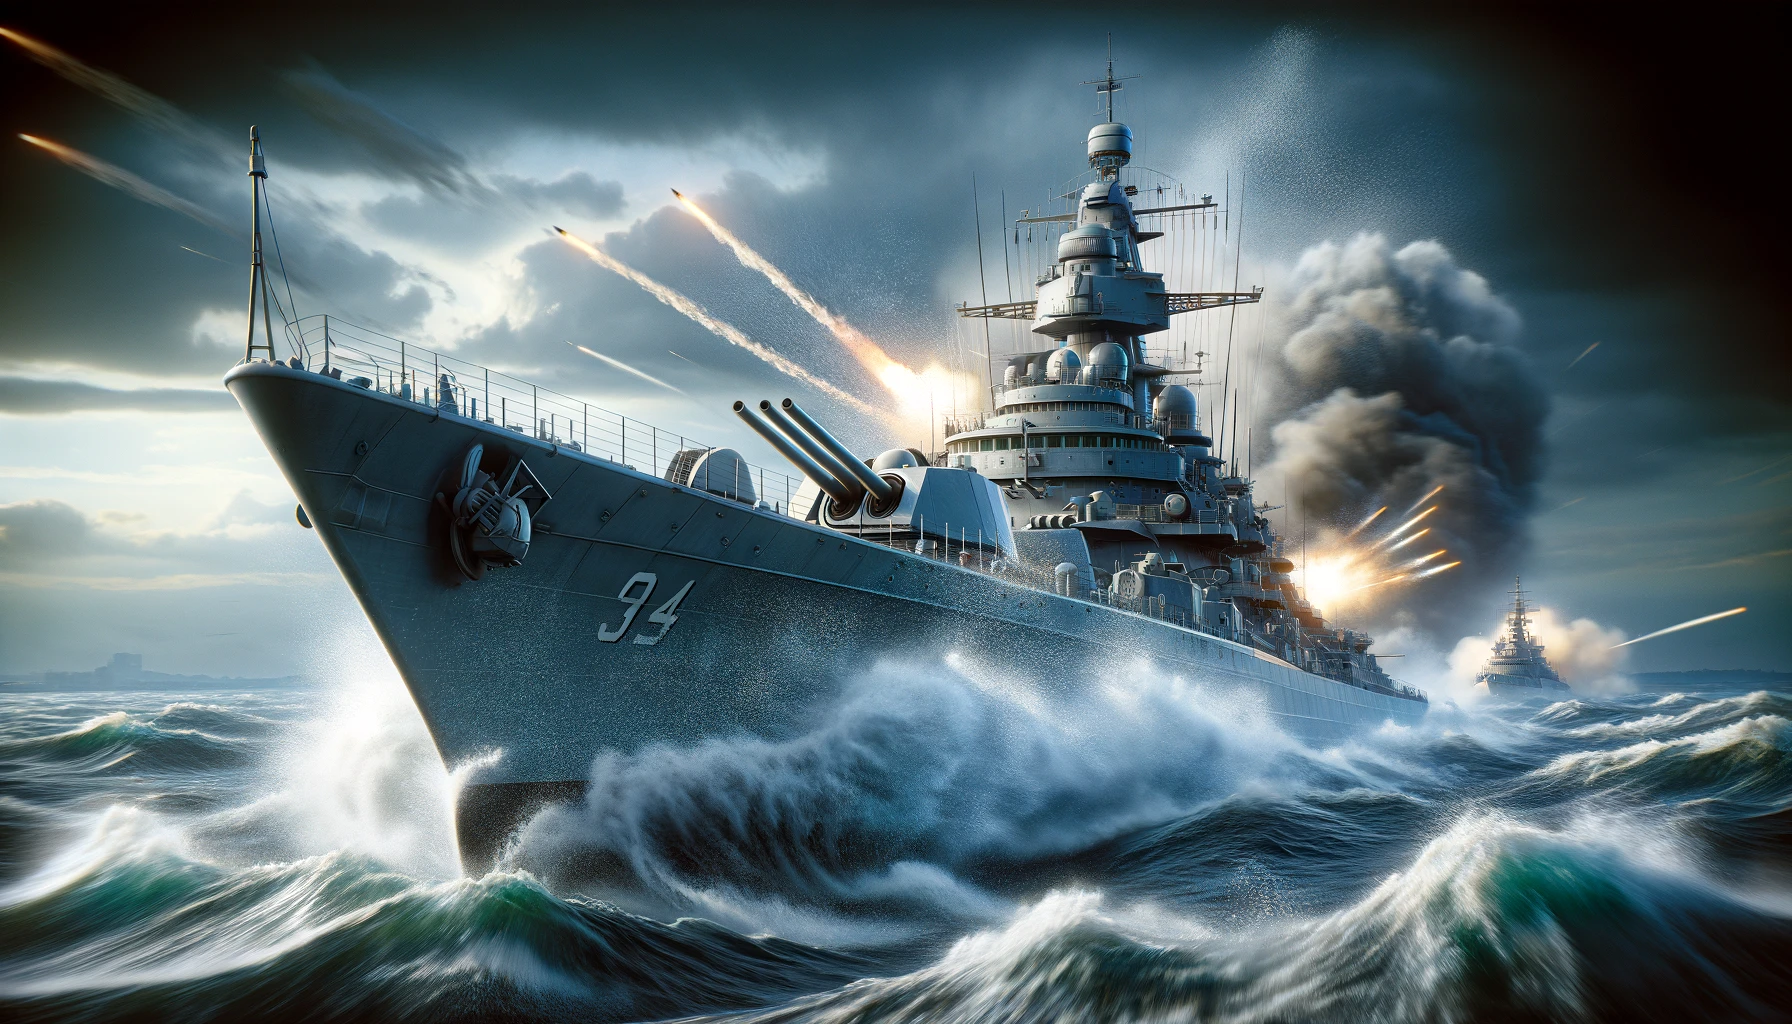 オランダ巡洋艦ハウデンリーウが主砲を発射中、激しい海戦の最中に大きな水しぶきとともに敵に立ち向かう瞬間を捉えたダイナミックなアクションショット。雲が立ち込める荒れた海とドラマチックな雰囲気が演出されています。